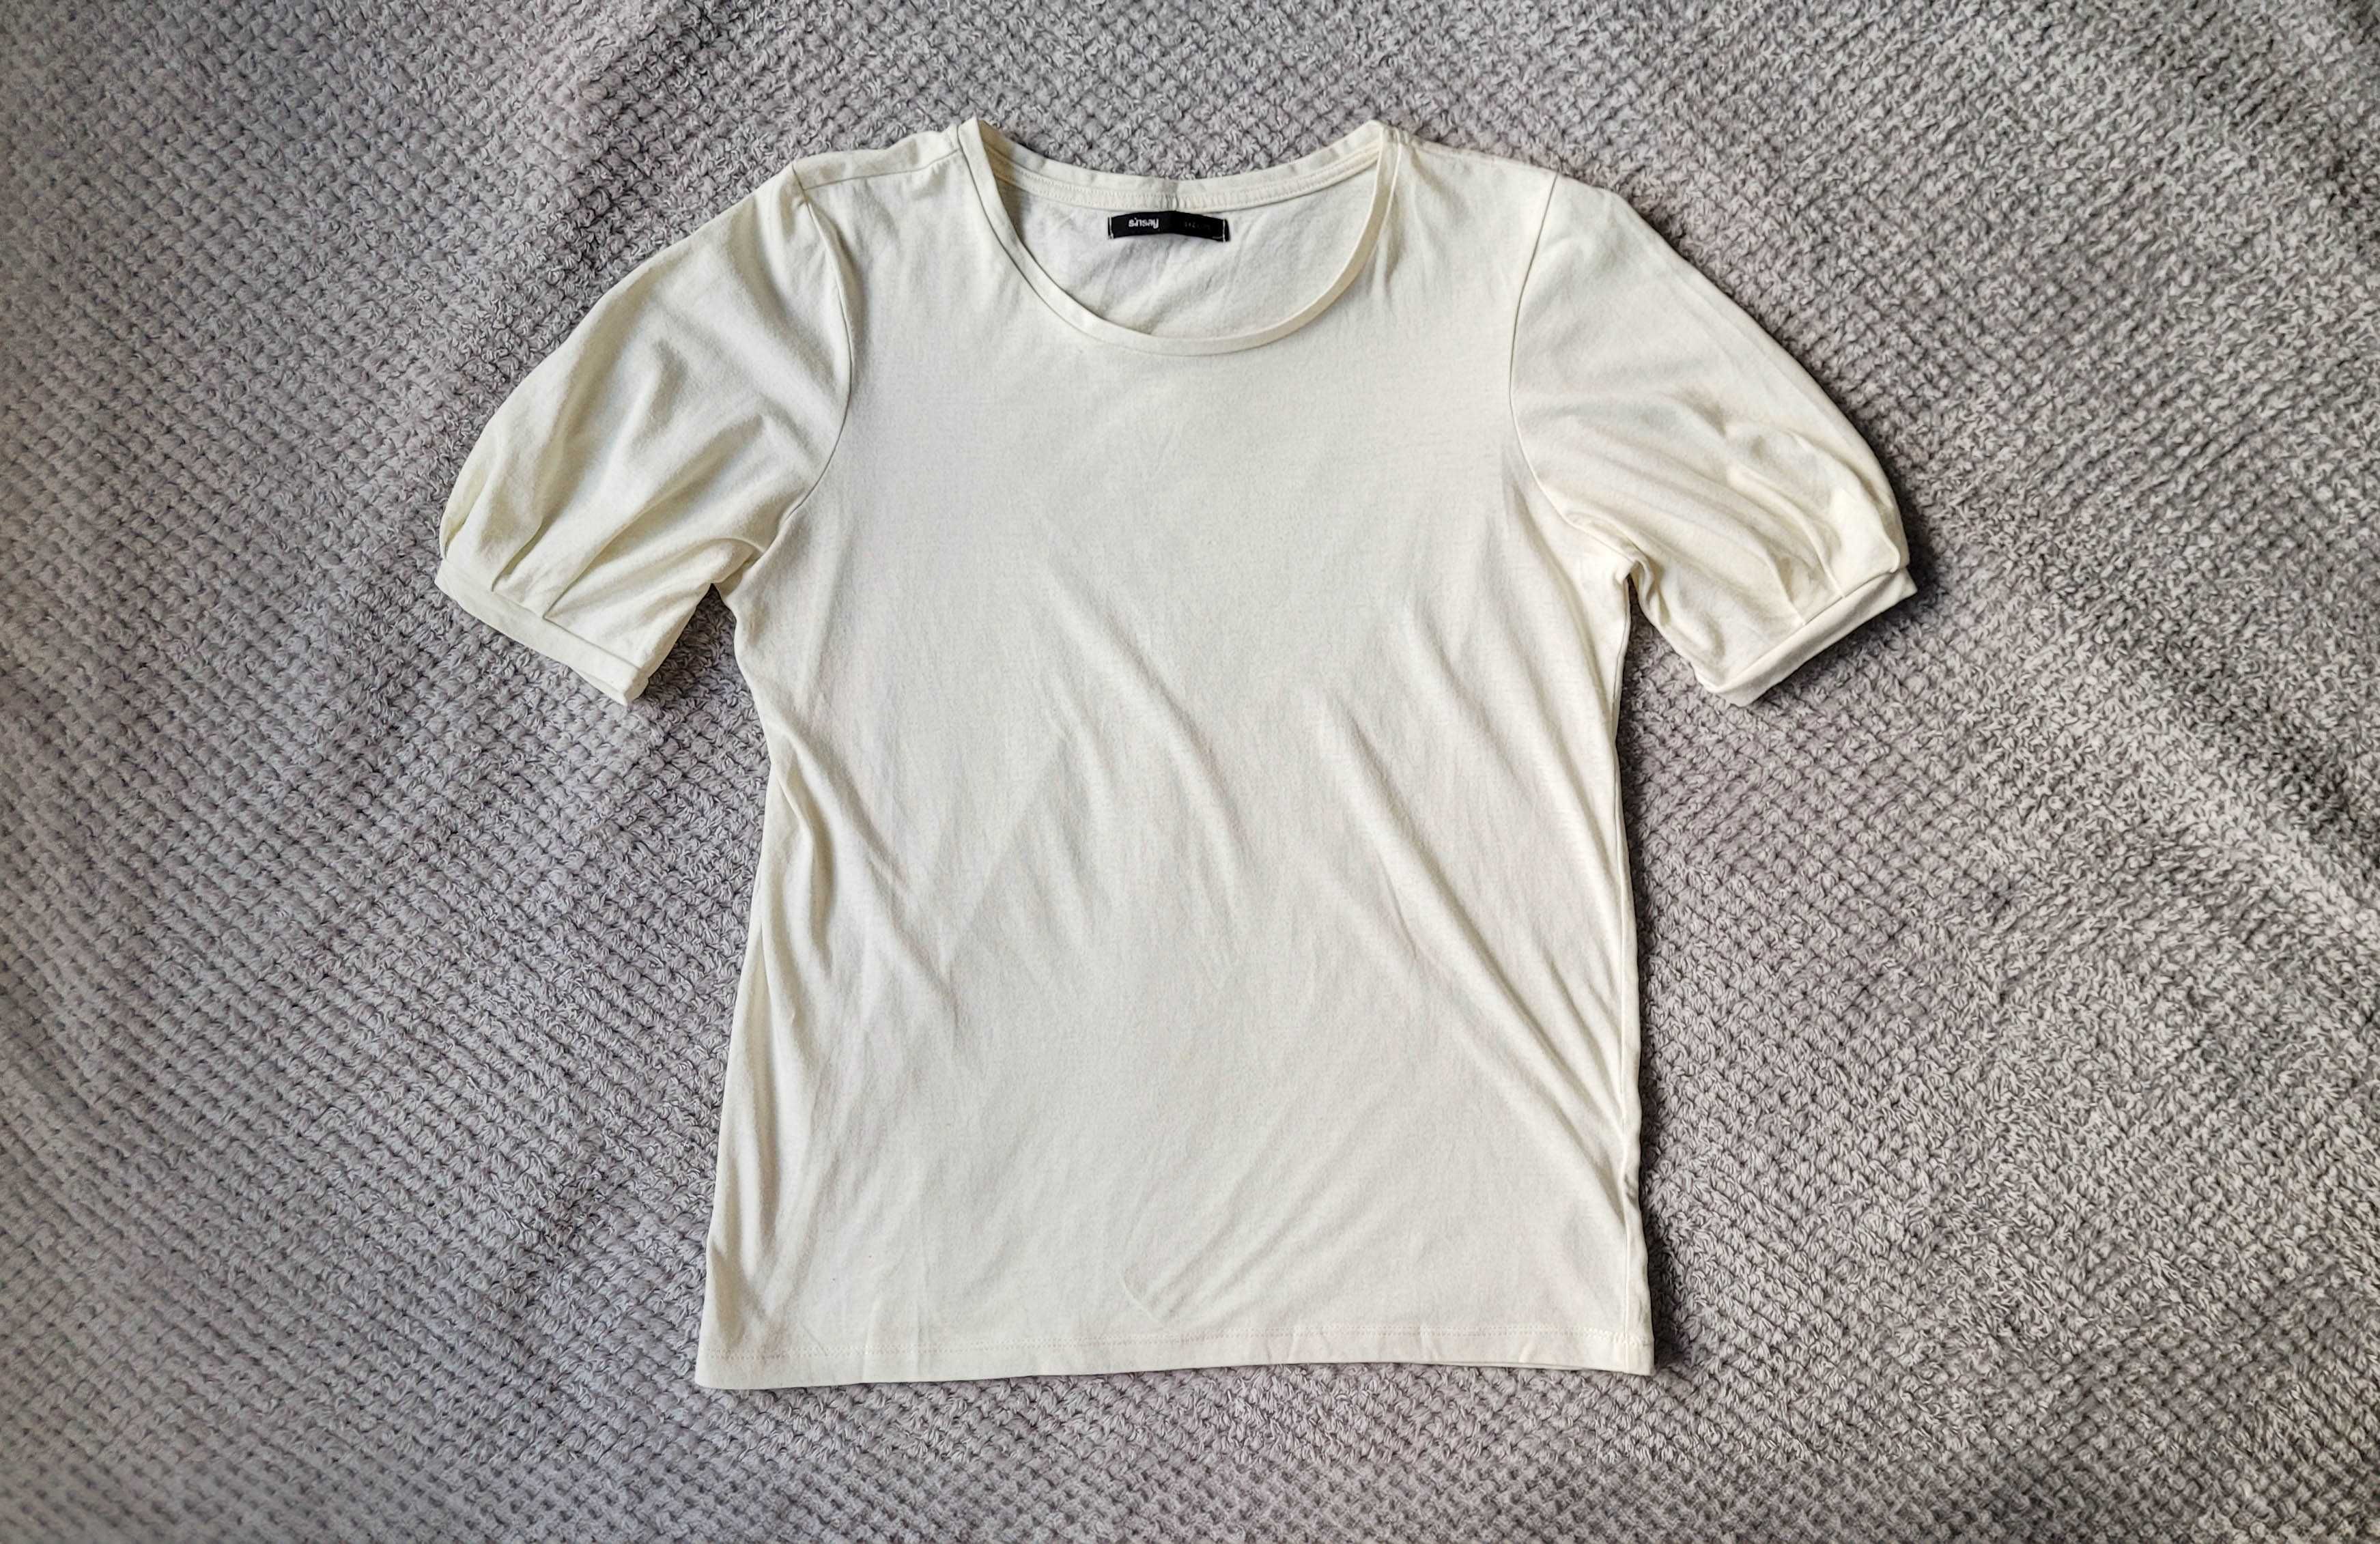 Bluzka typu T-shirt z pufiastymi rękawami, kremowa, Sinsay, rozmiar M